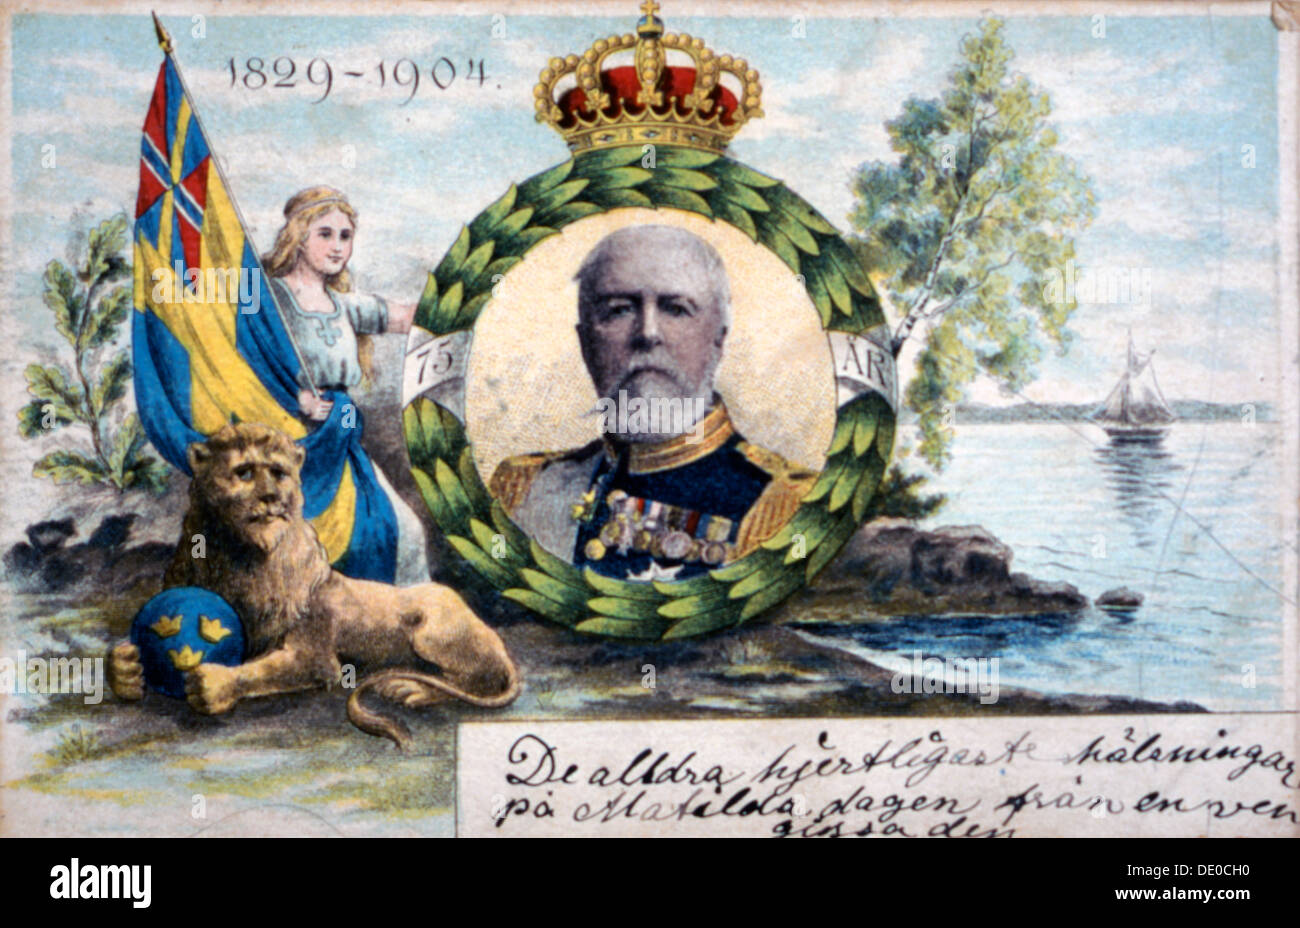 El rey Oscar II de Suecia y Noruega, 1904. Artista: Per-Olof Danielsson Foto de stock